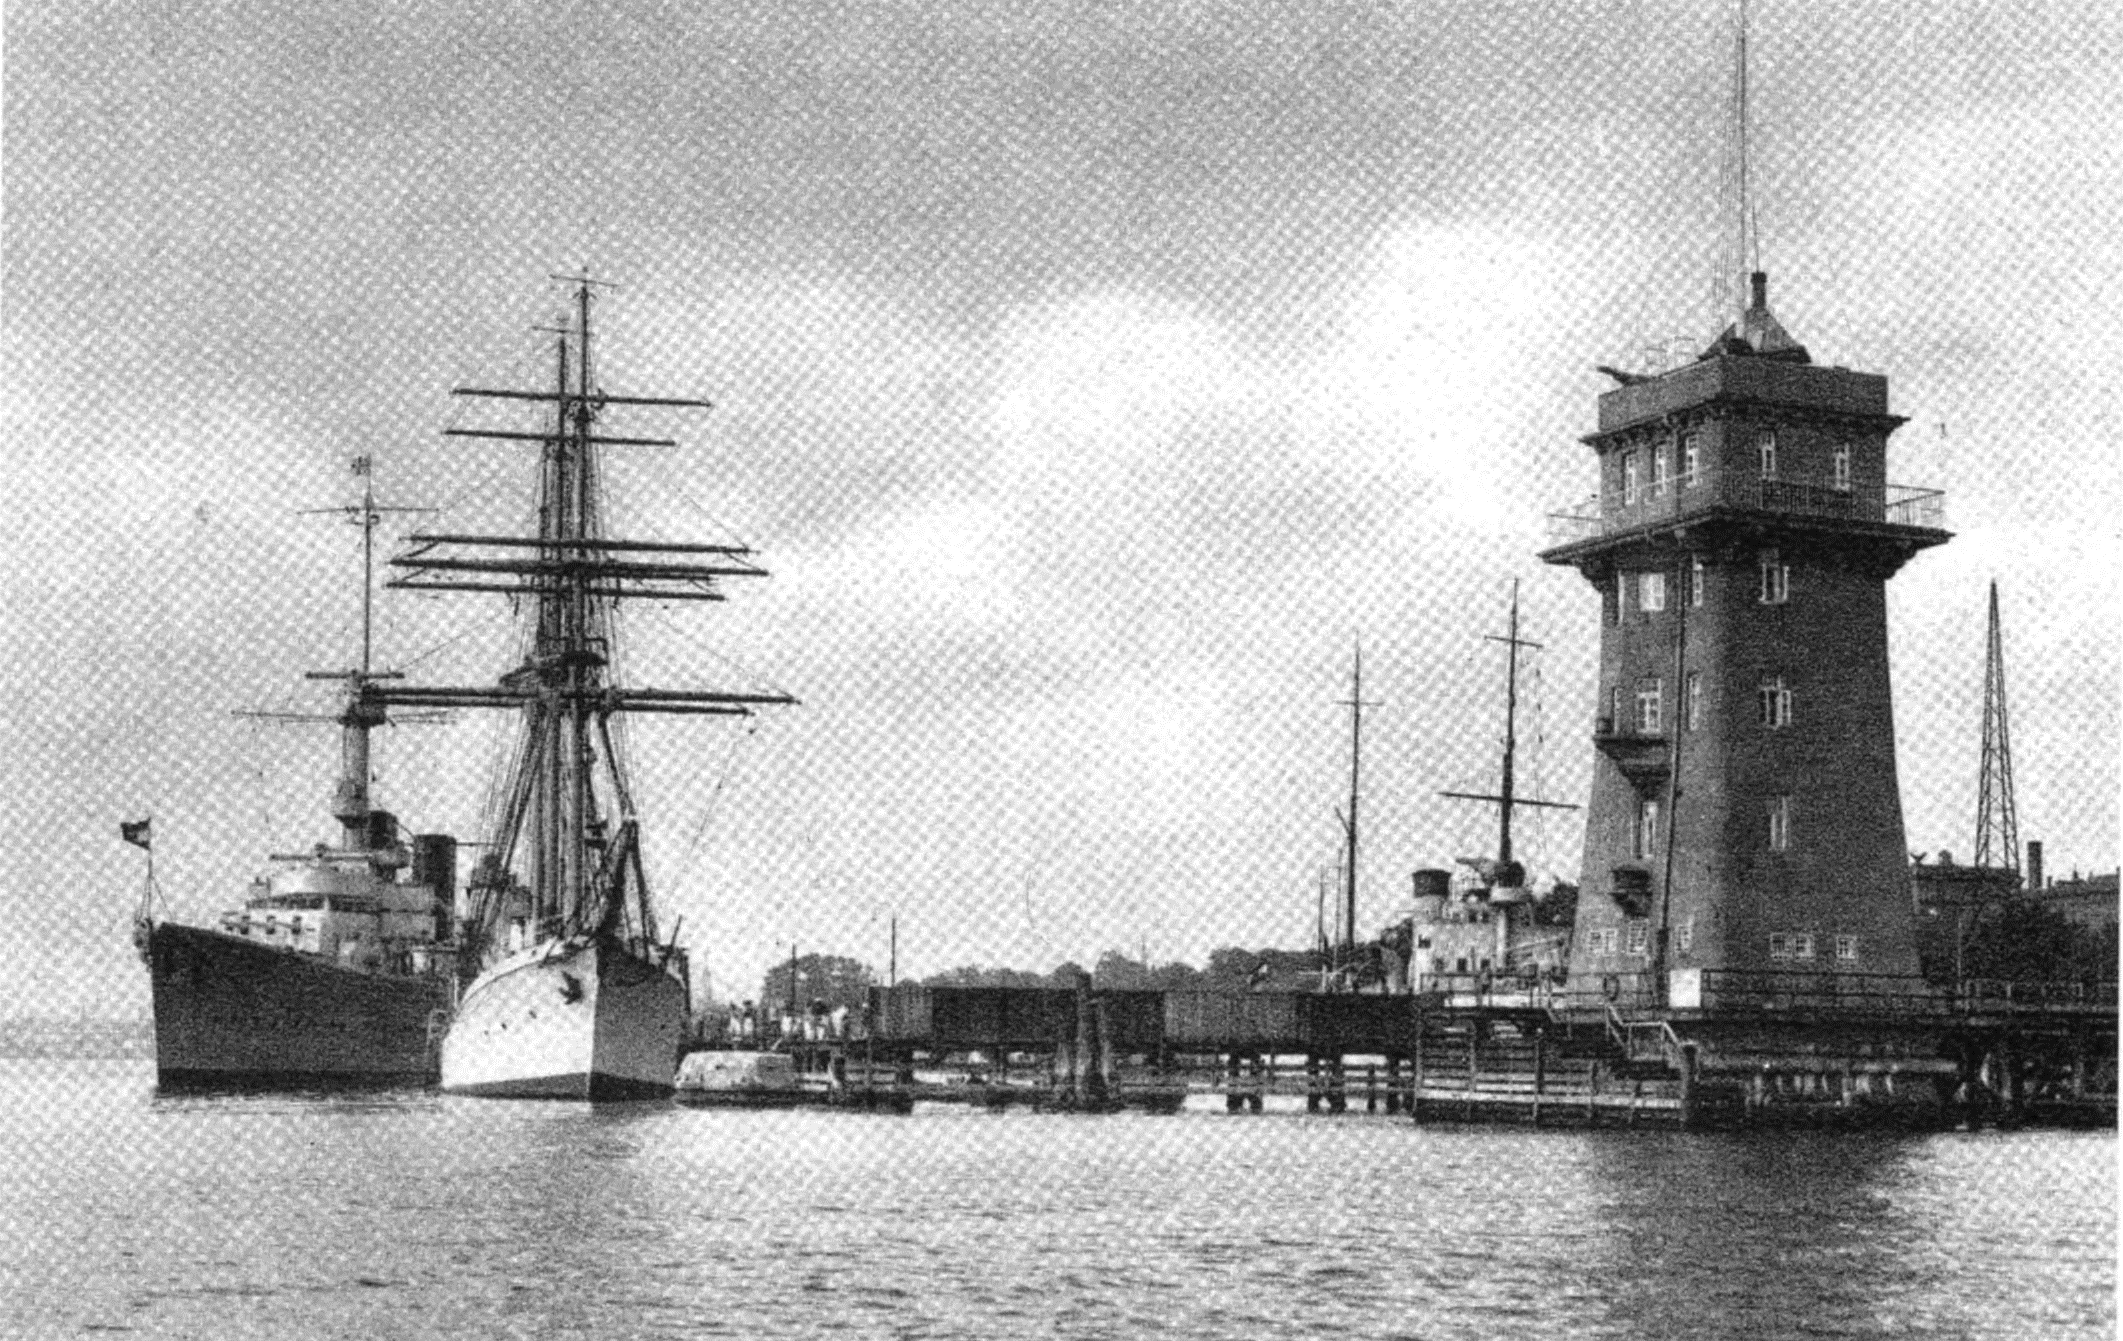 Königsberg